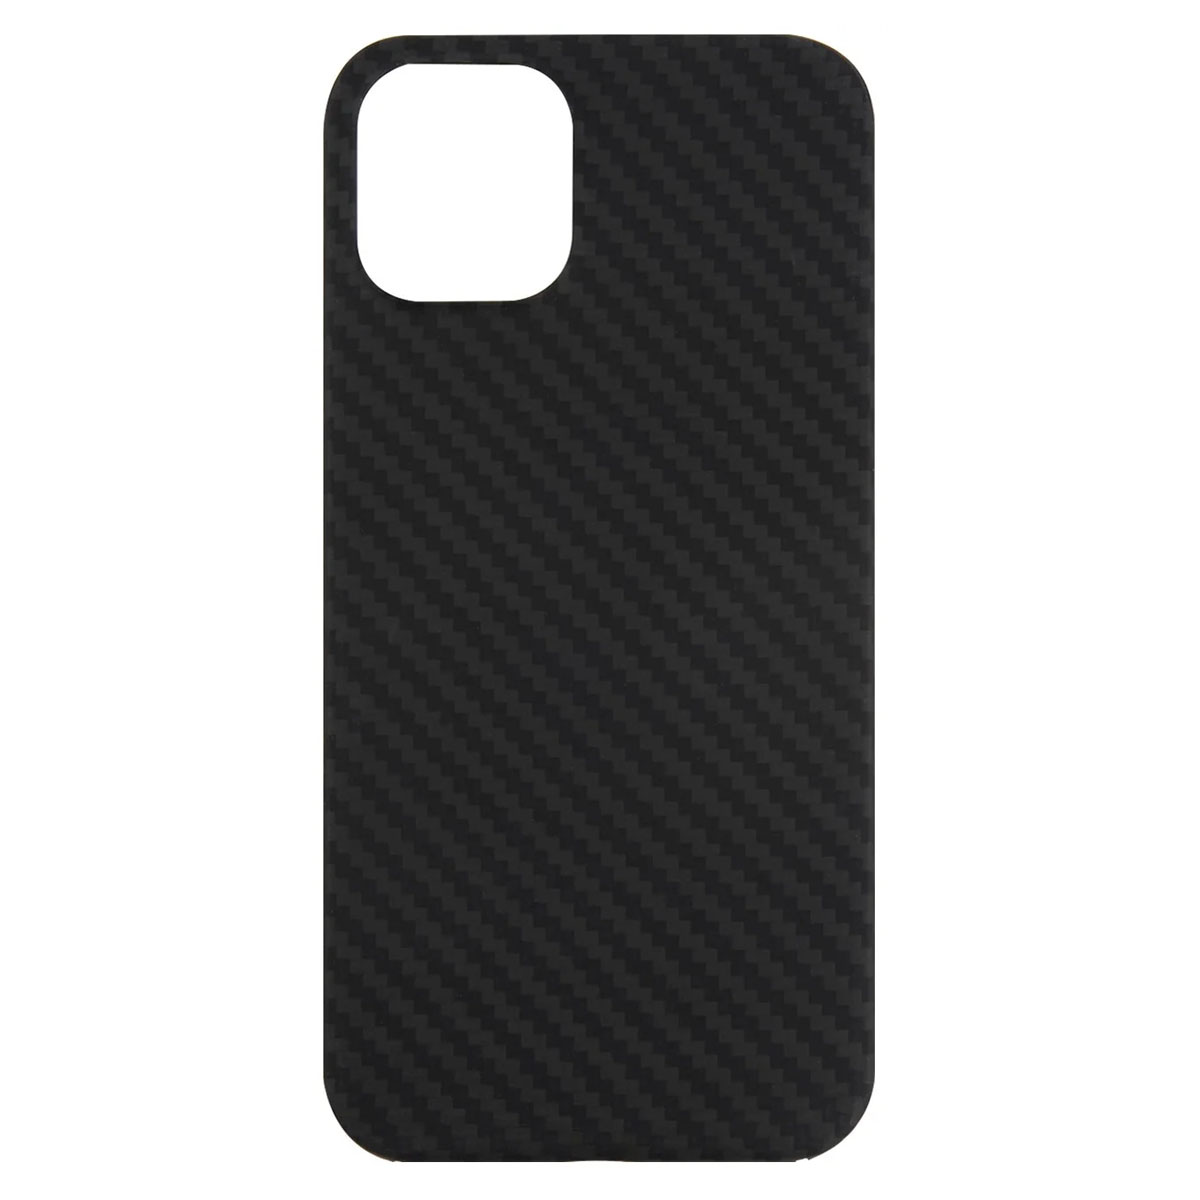 Чехол накладка для APPLE iPhone 11 Pro MAX, силикон, карбон, цвет черный